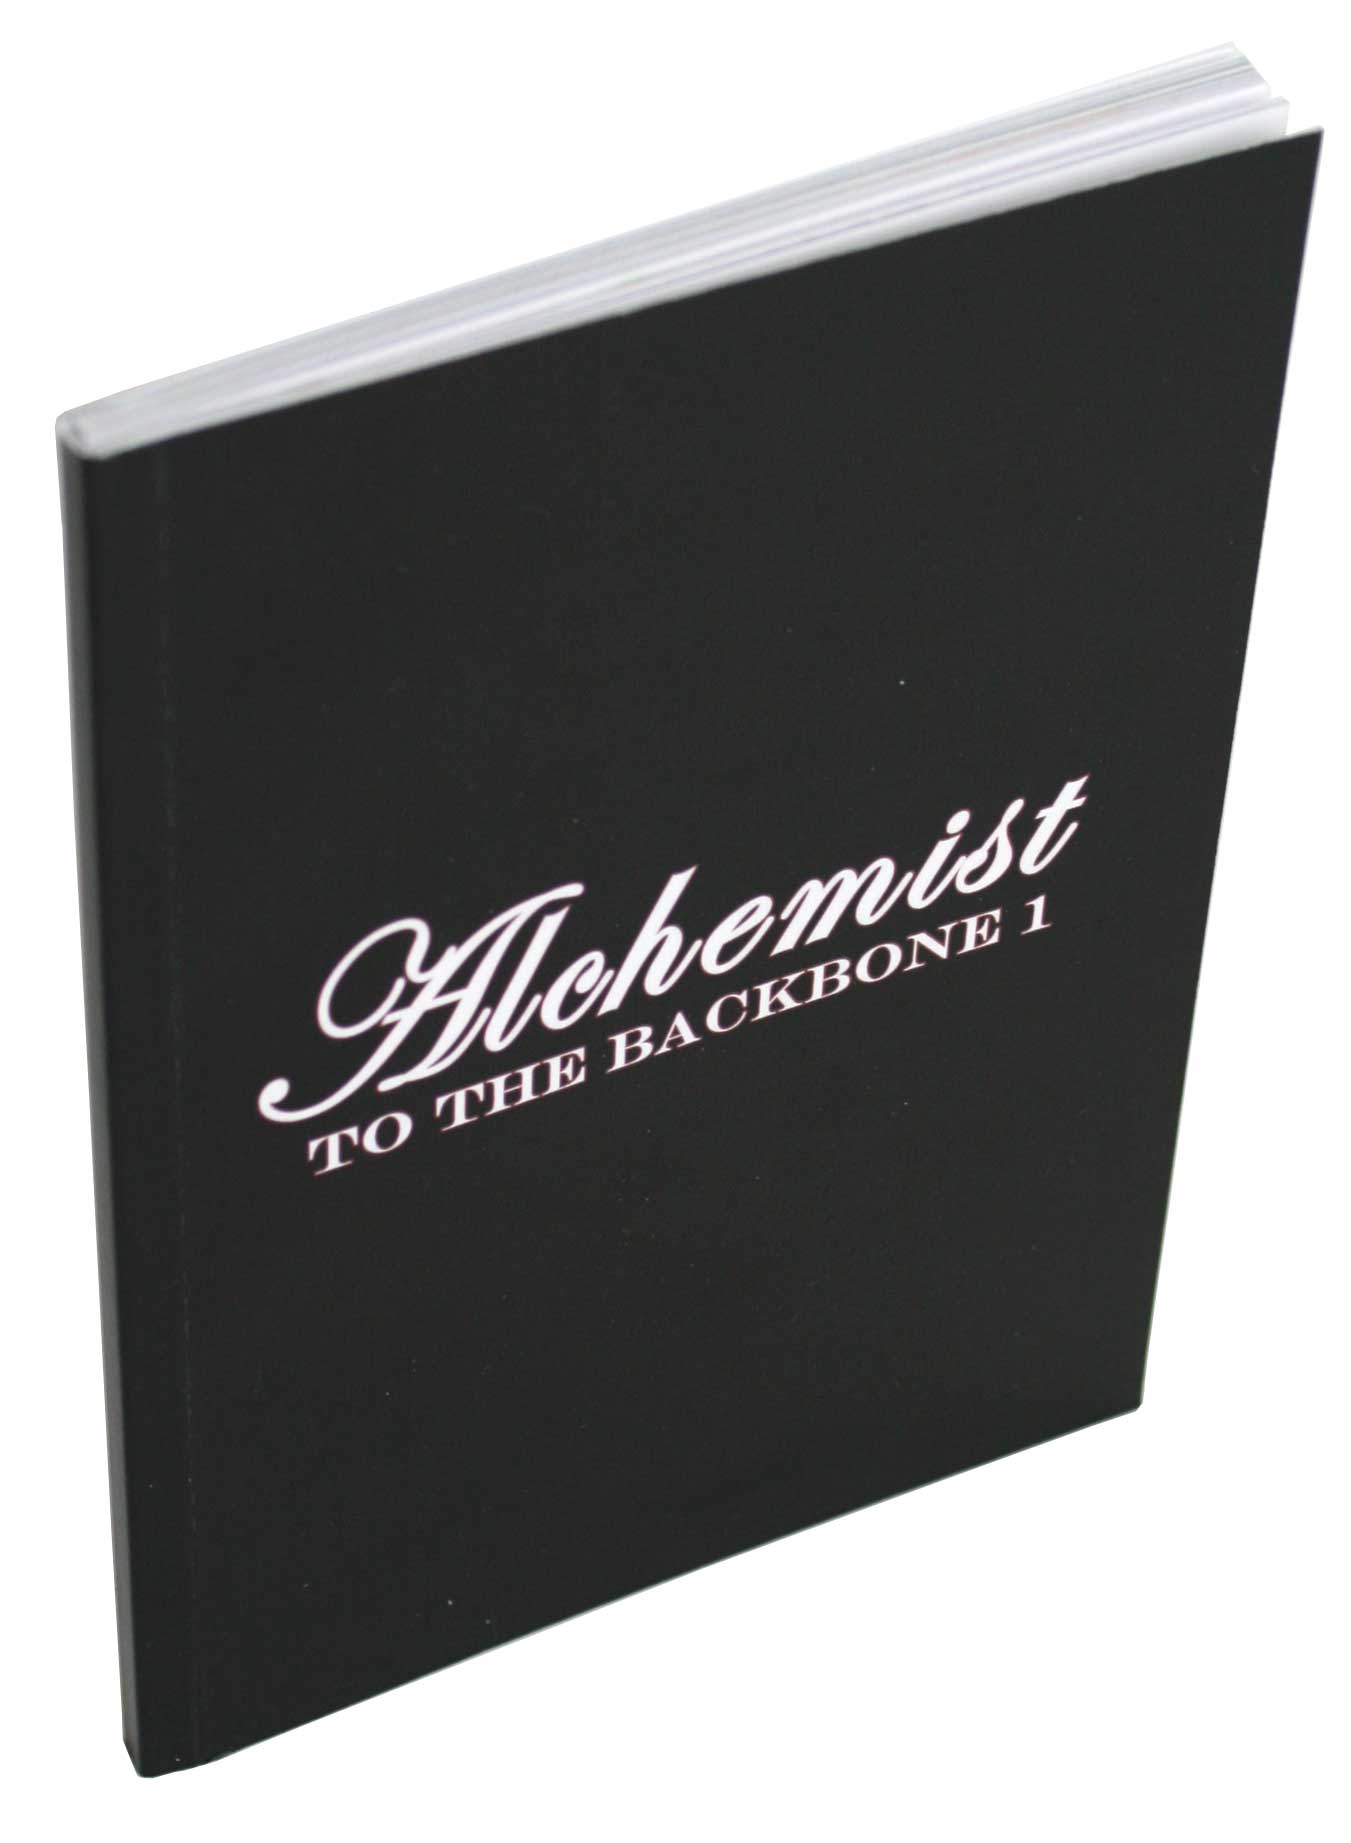 Couverture du livret d’information - Fullmetal Alchemist Box DVD collector 1 (Dybex - 2008)